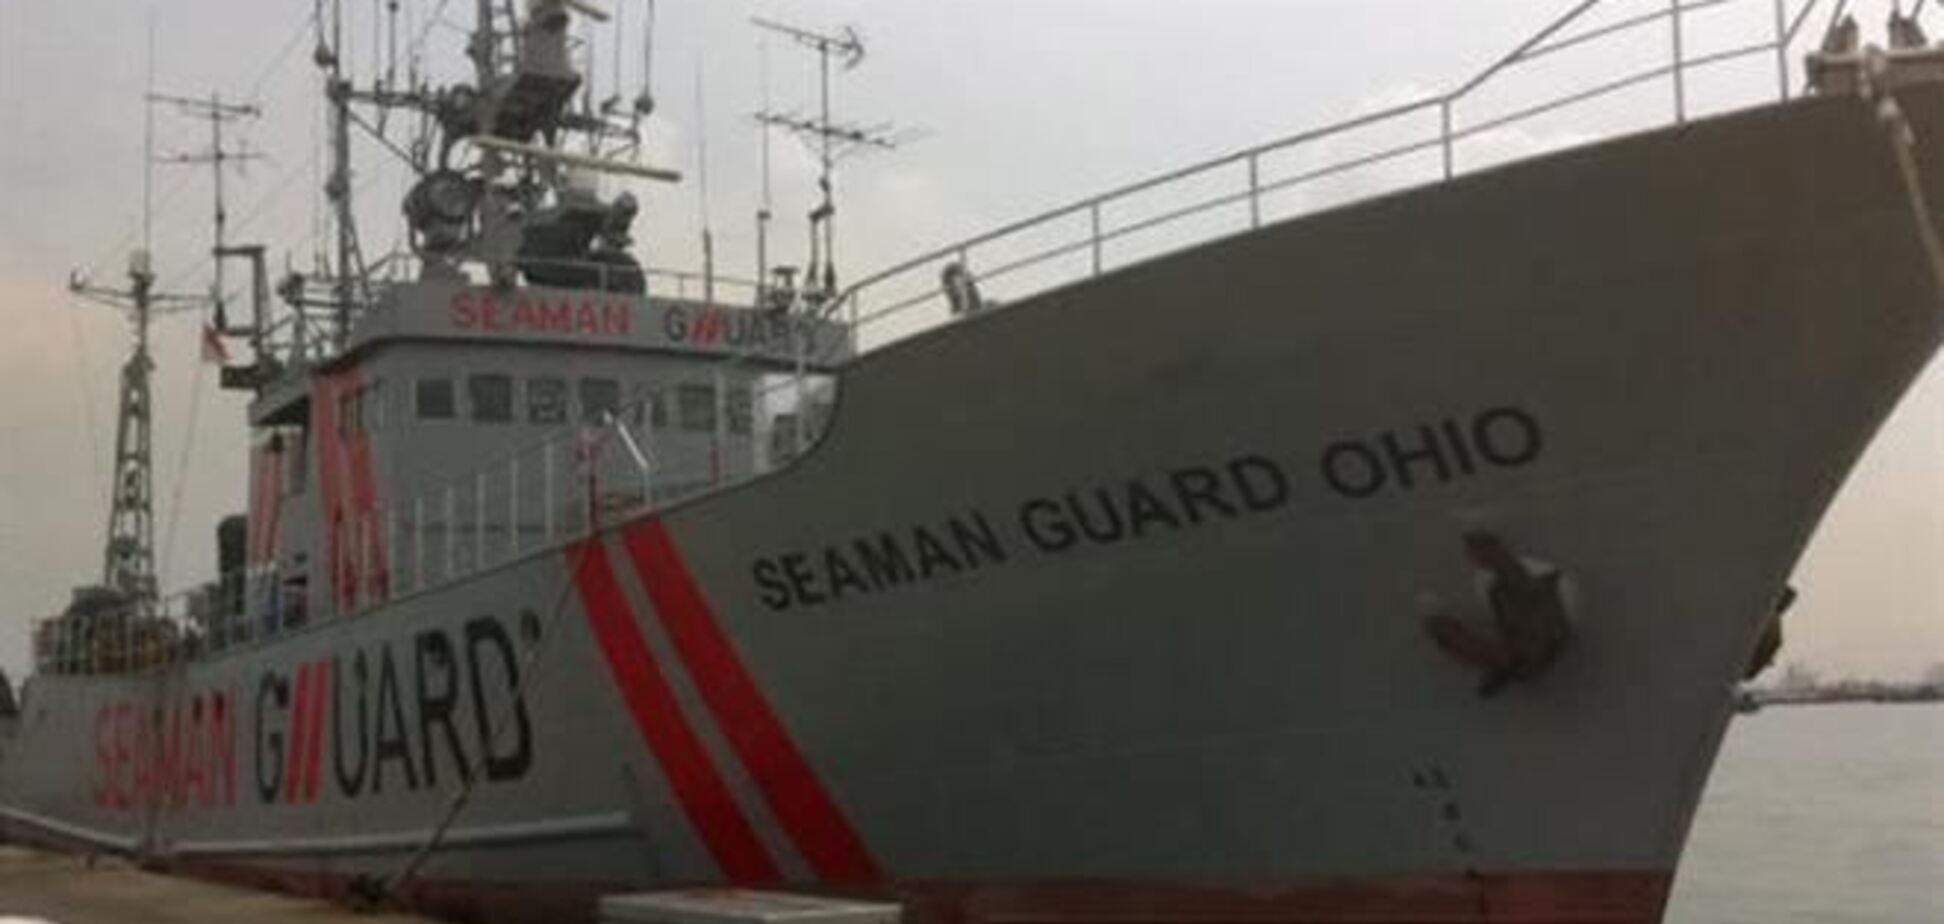 В Индии в среду начнется суд над украинцами из судна Seaman Guard Ohio